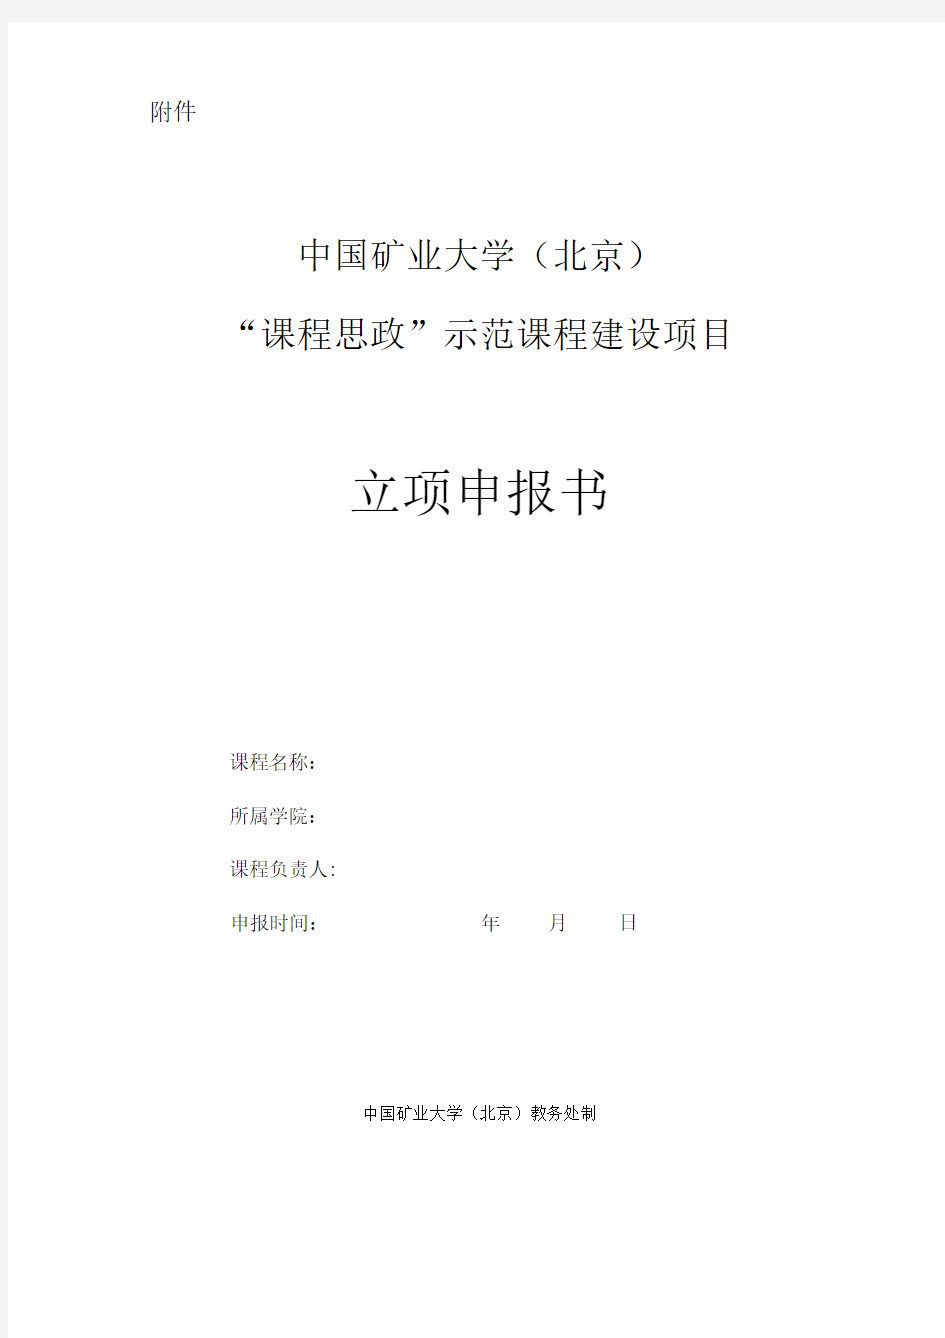 中国矿业大学“课程思政”示范课程建设项目立项申报书